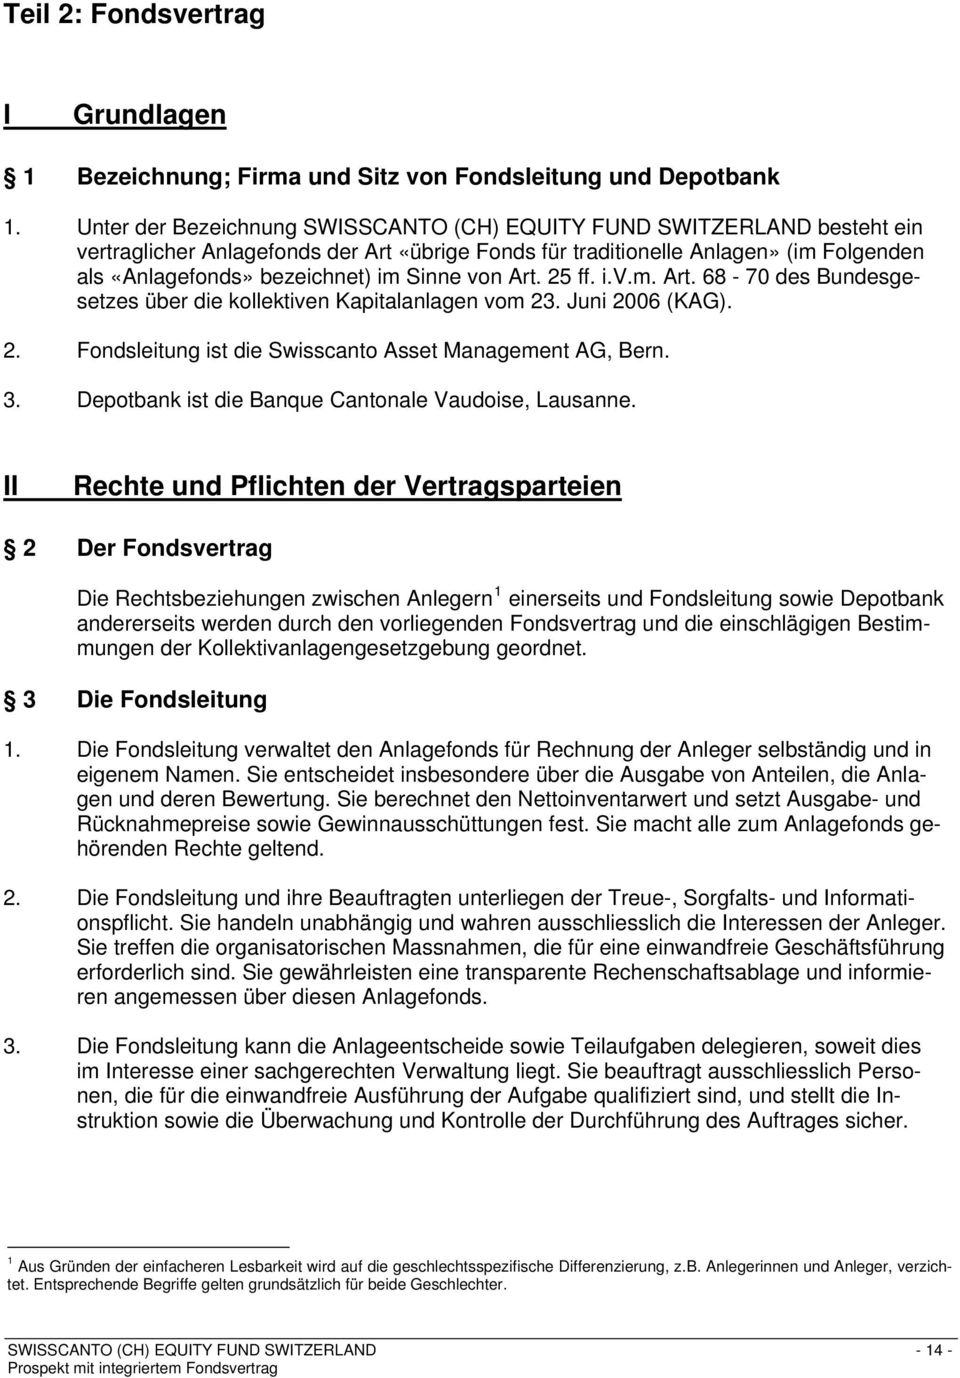 Sinne von Art. 25 ff. i.v.m. Art. 68-70 des Bundesgesetzes über die kollektiven Kapitalanlagen vom 23. Juni 2006 (KAG). 2. Fondsleitung ist die Swisscanto Asset Management AG, Bern. 3.